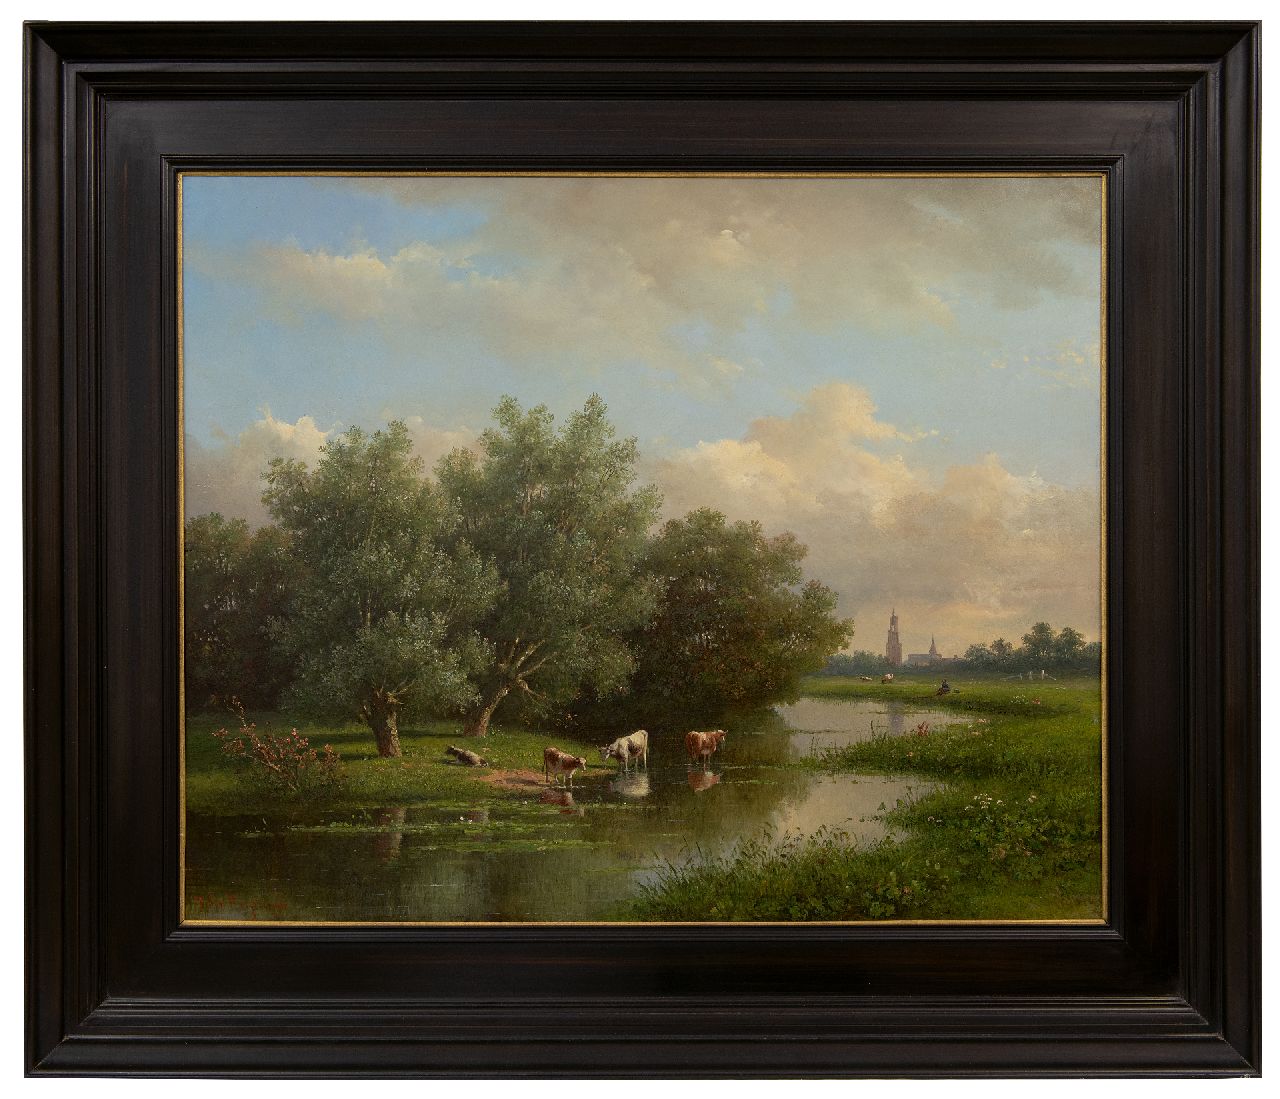 Wisselingh J.P. van | Johannes Pieter van Wisselingh | Schilderijen te koop aangeboden | Zomerlandschap met koeien nabij Amersfoort, olieverf op paneel 58,3 x 72,4 cm, gesigneerd linksonder